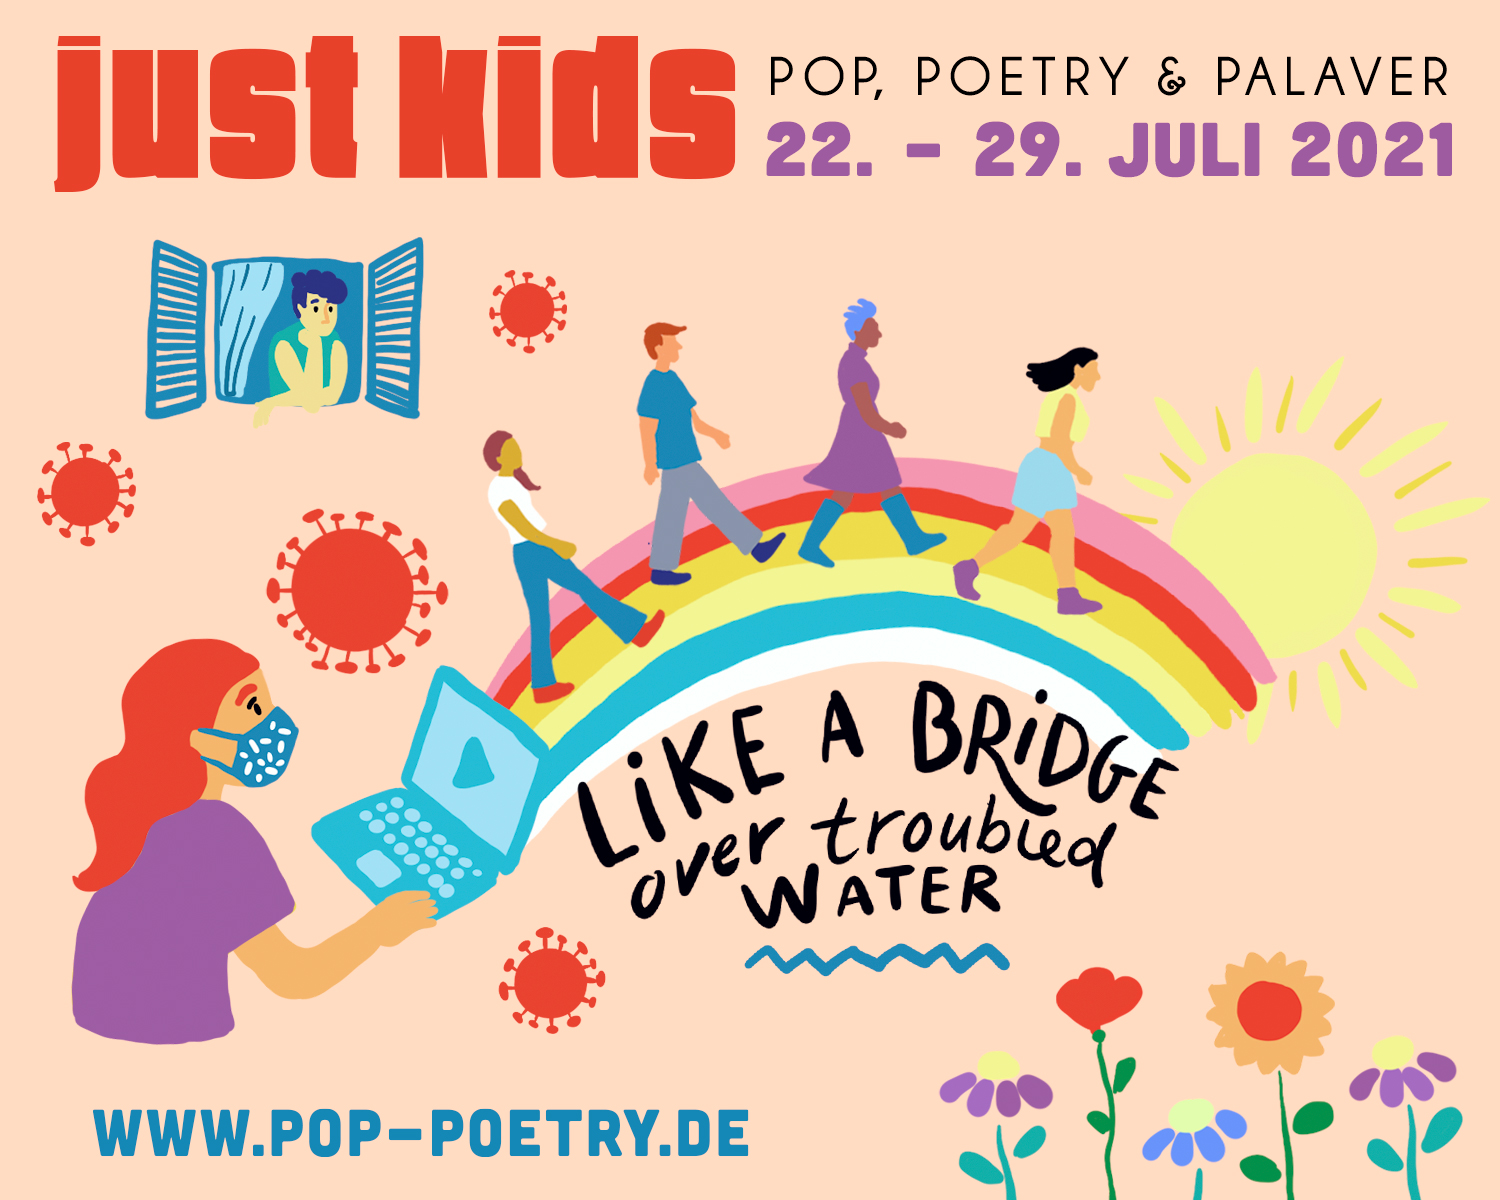 Just Kids: Pop, Poetry, Palaver 2021